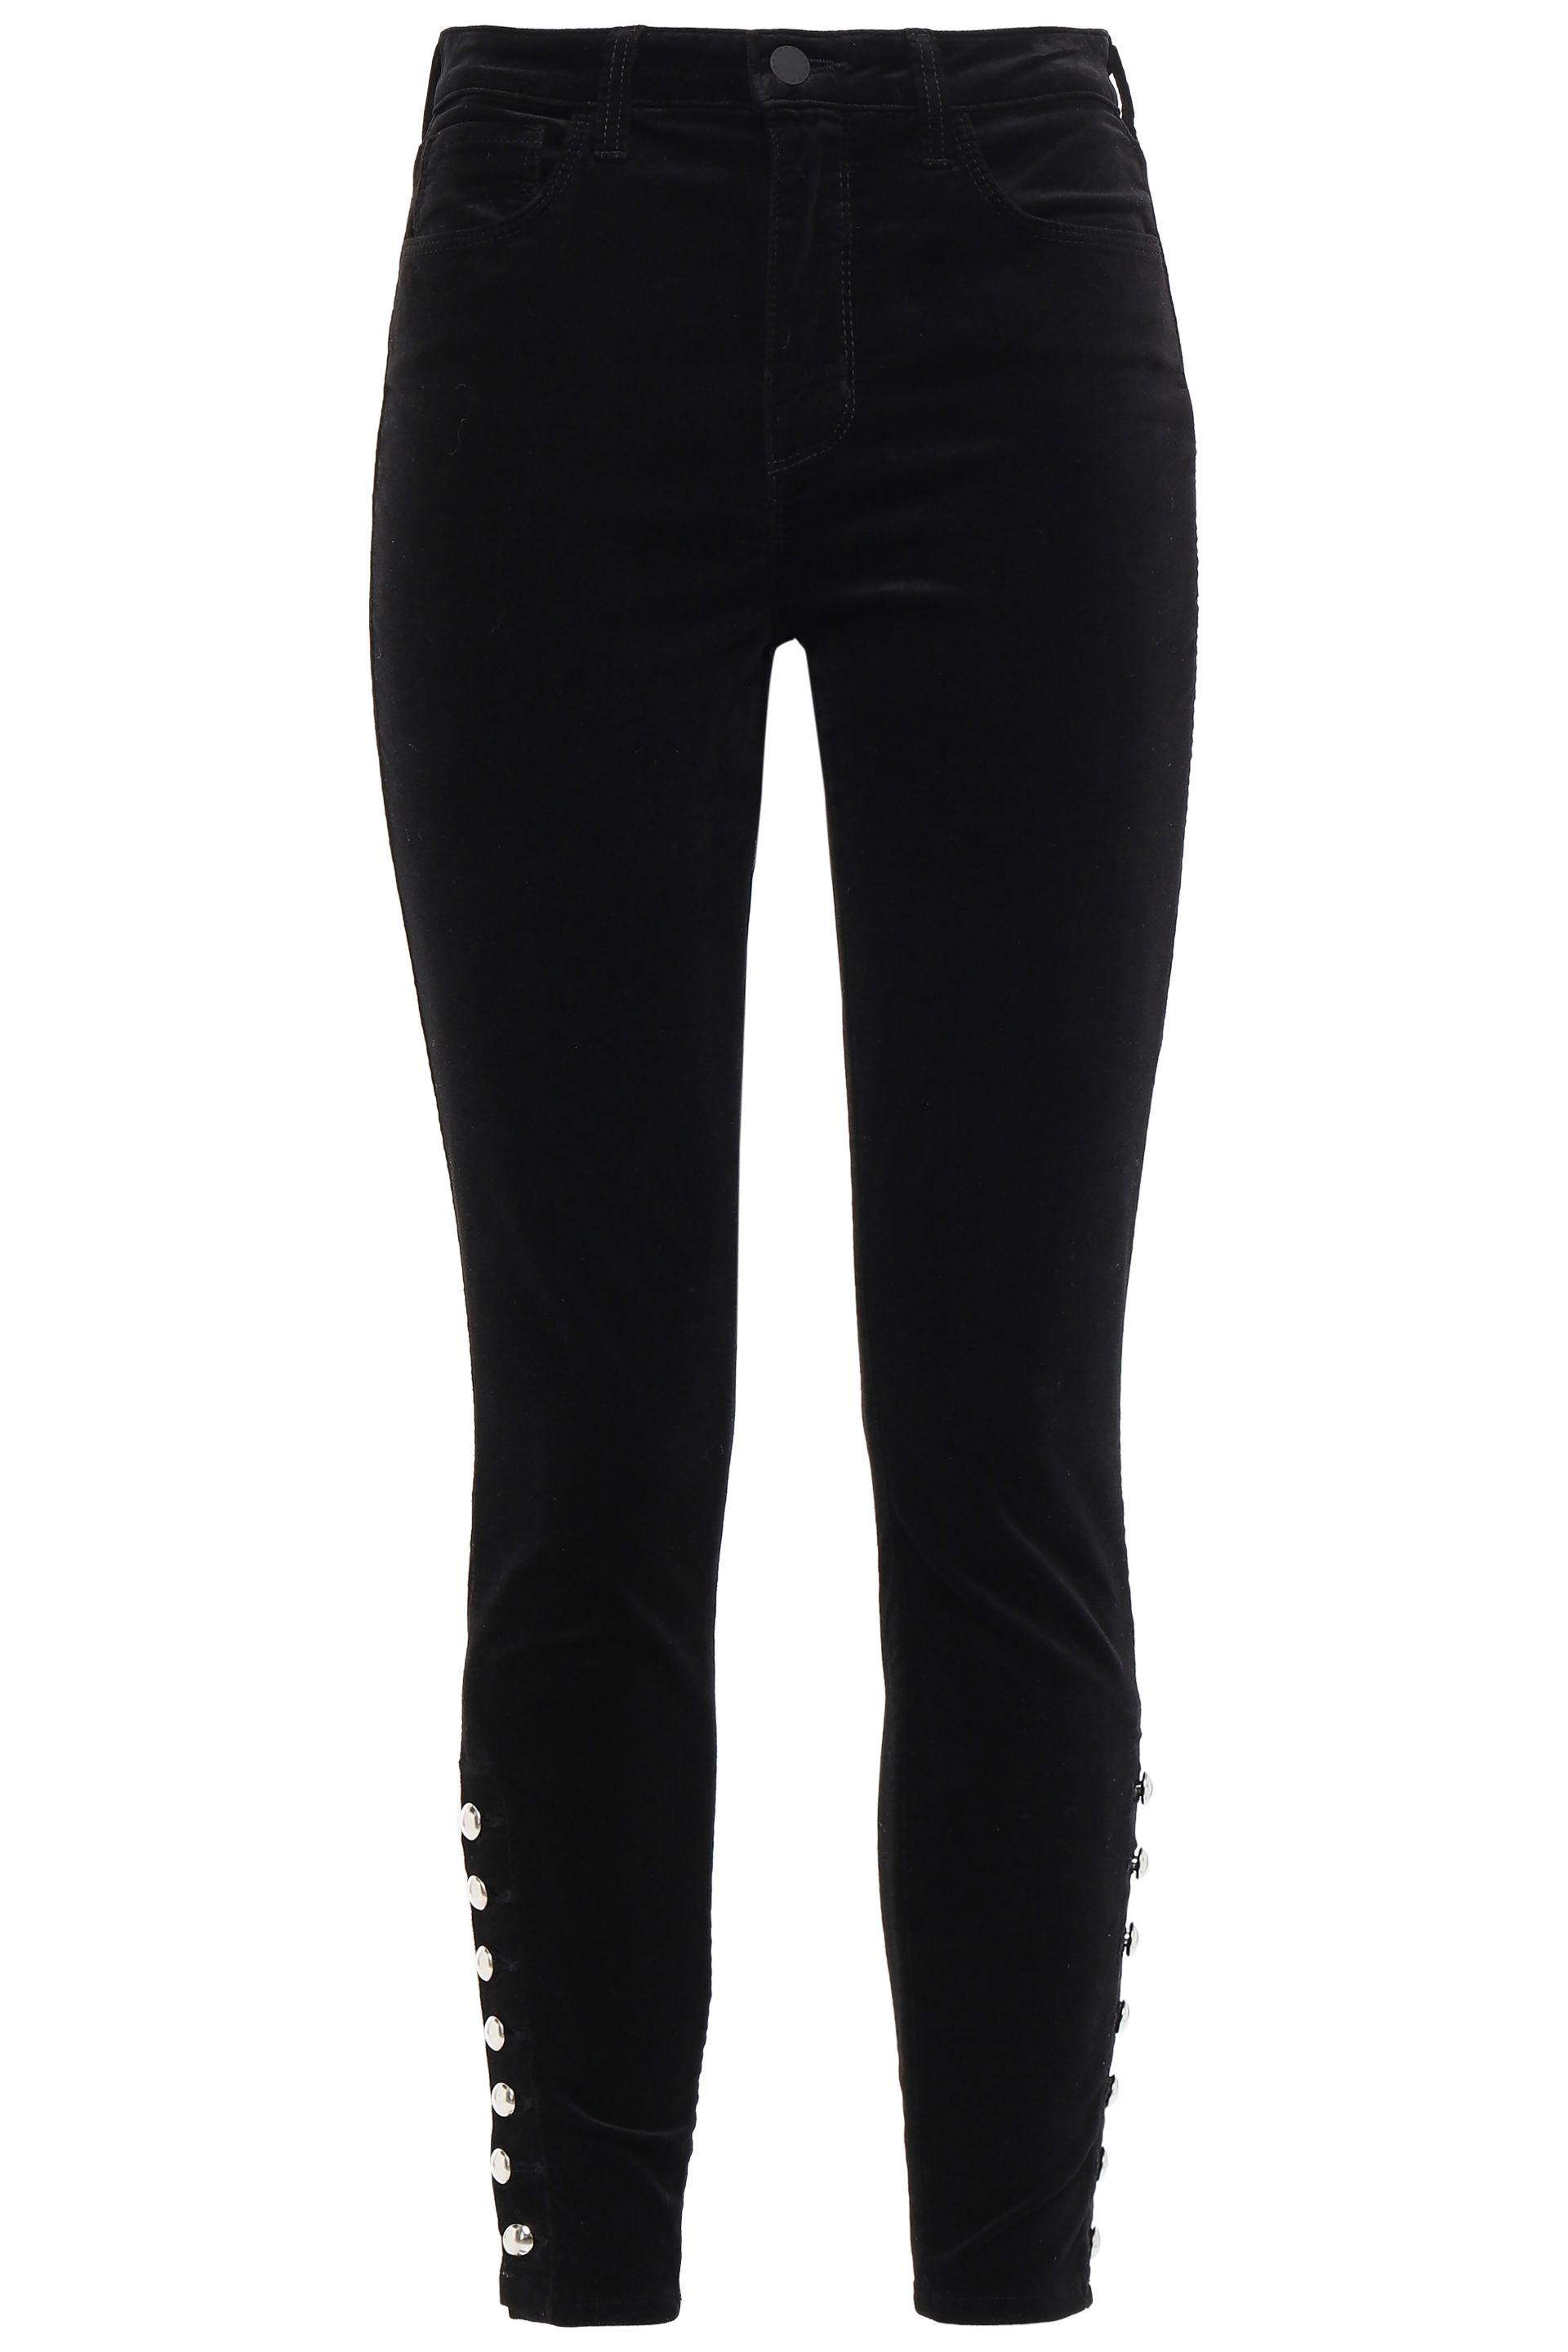 L'Agence Piper Button-detailed Velvet Skinny Pants Black | Lyst